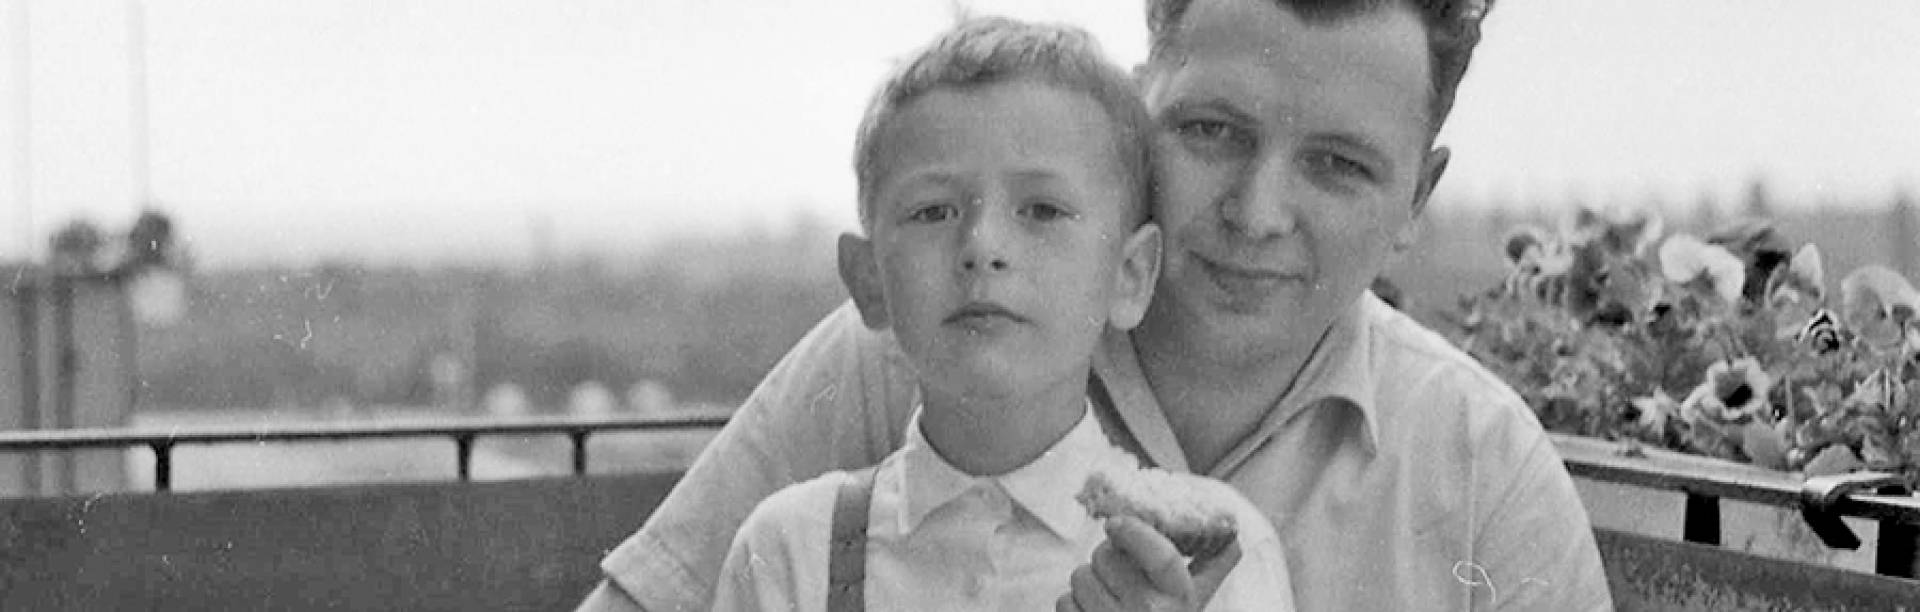 Vater und Sohn der Familie Kummer im Jahr 1963